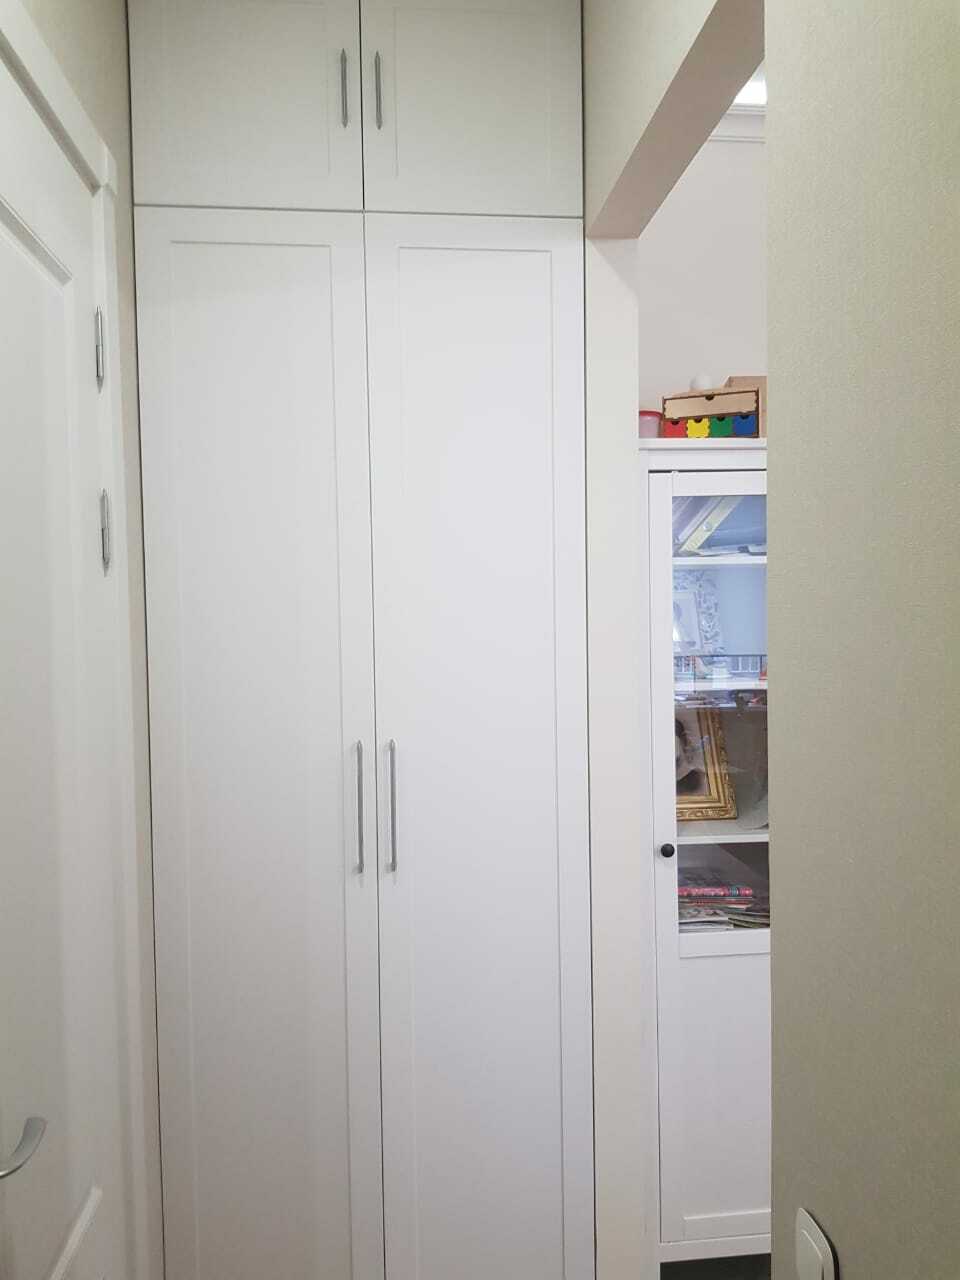 Встроенный распашной шкаф из белого МДФ с фрезерованными фасадами, купленный в СПб у производителя